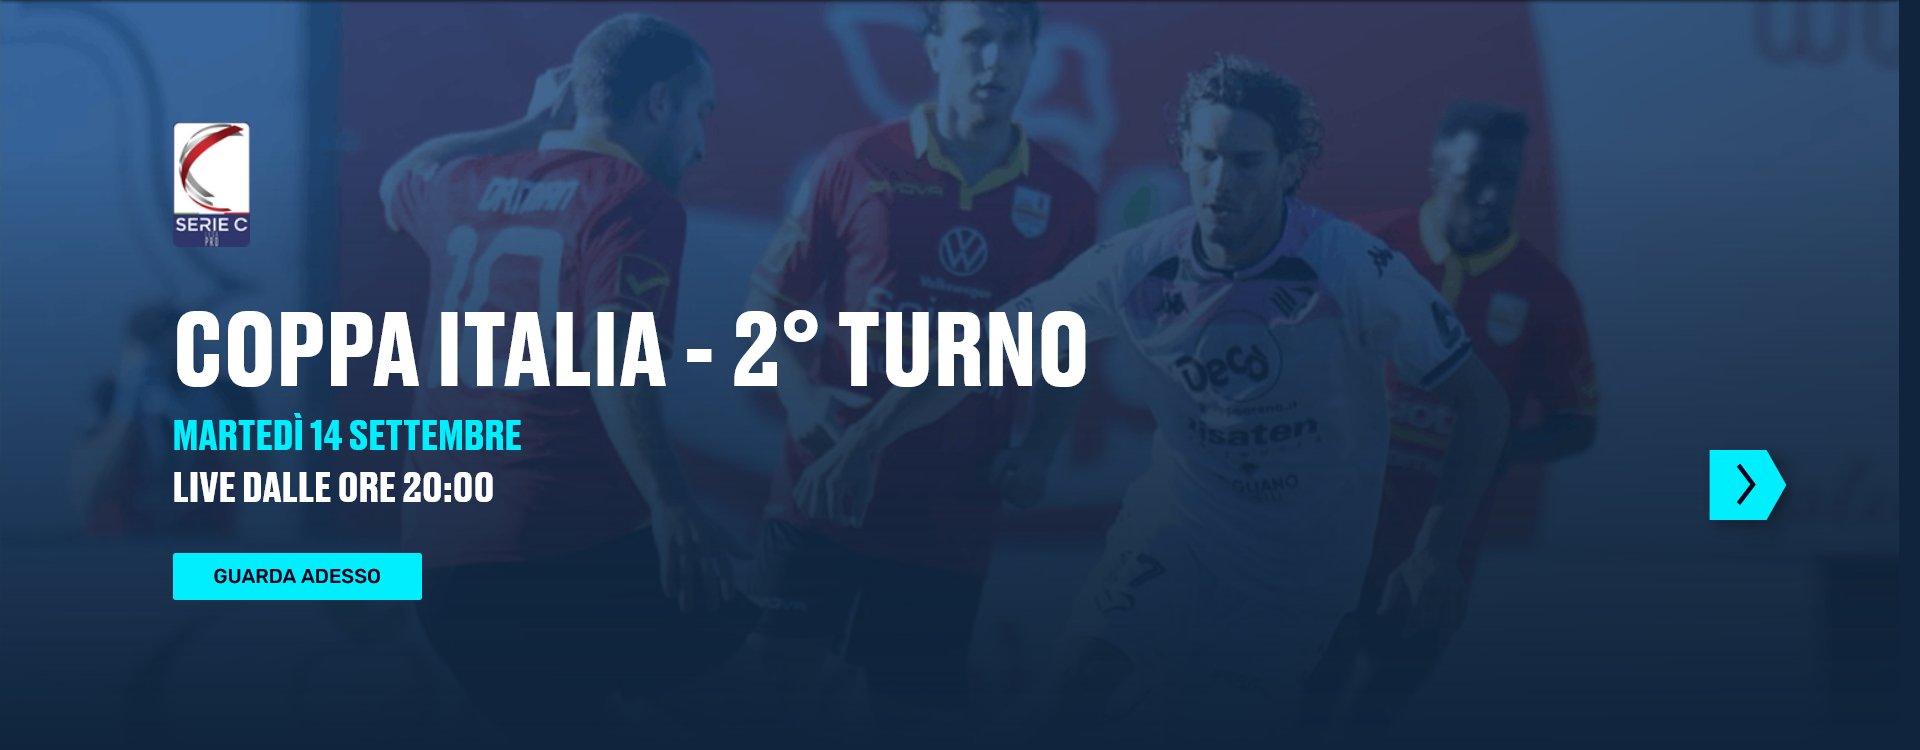 Coppa Italia Serie C 2021/22 2 Turno, Palinsesto Telecronisti Eleven Sports